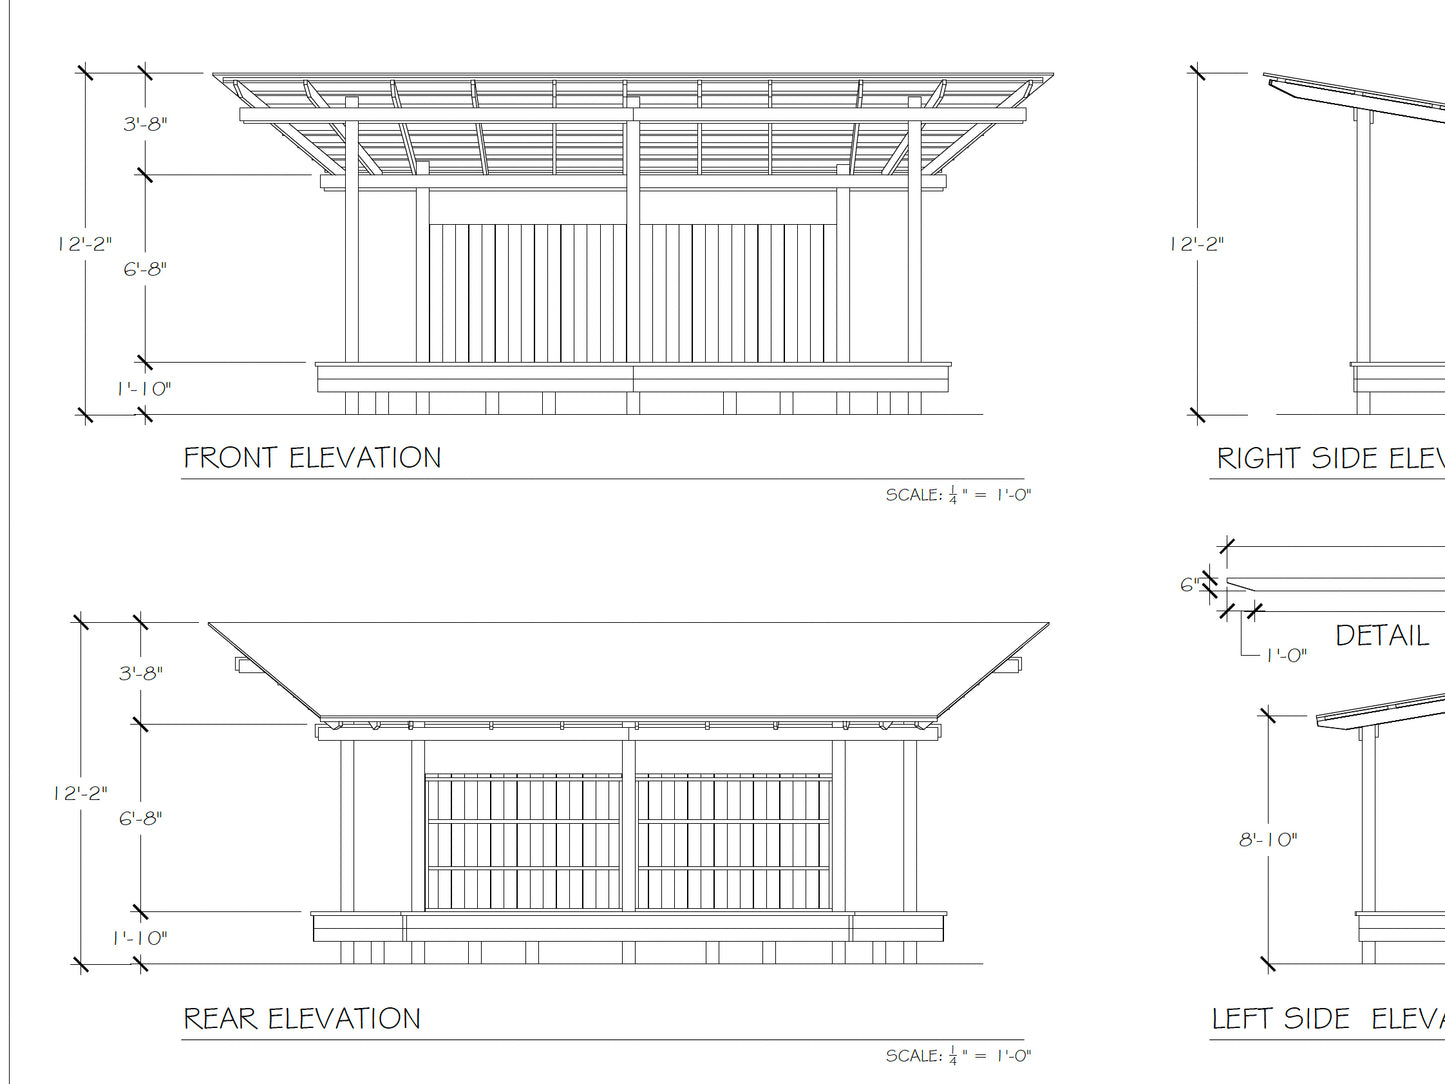 Pavilion Plans